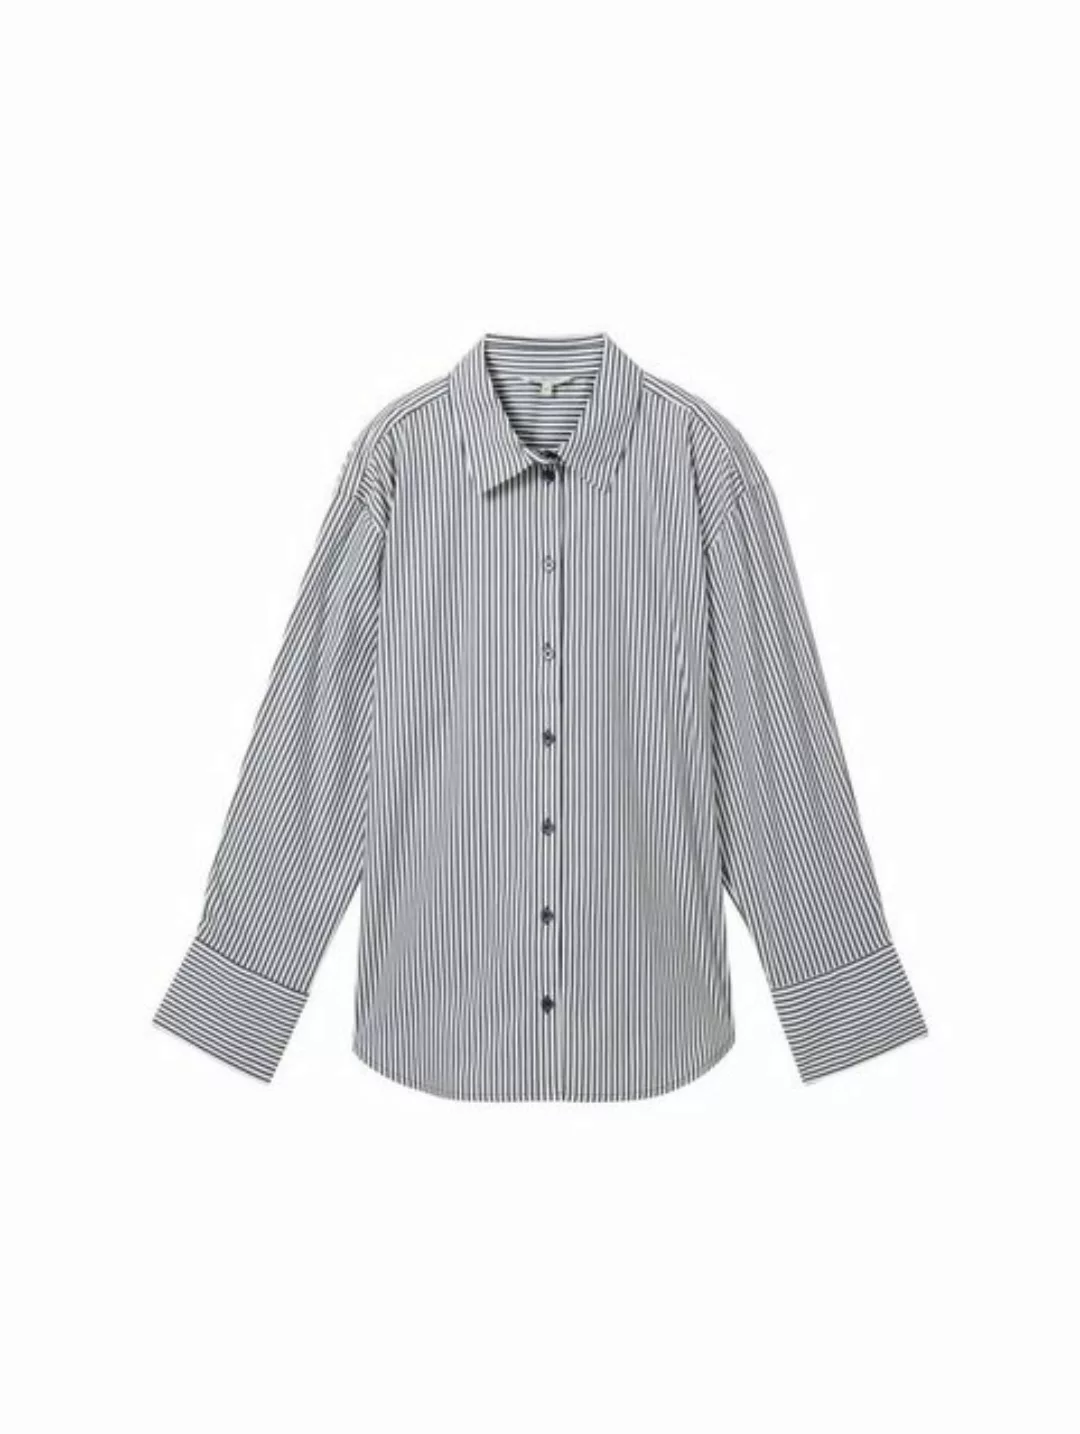 TOM TAILOR Denim Blusenshirt striped poplin shirt, navy white stripe günstig online kaufen